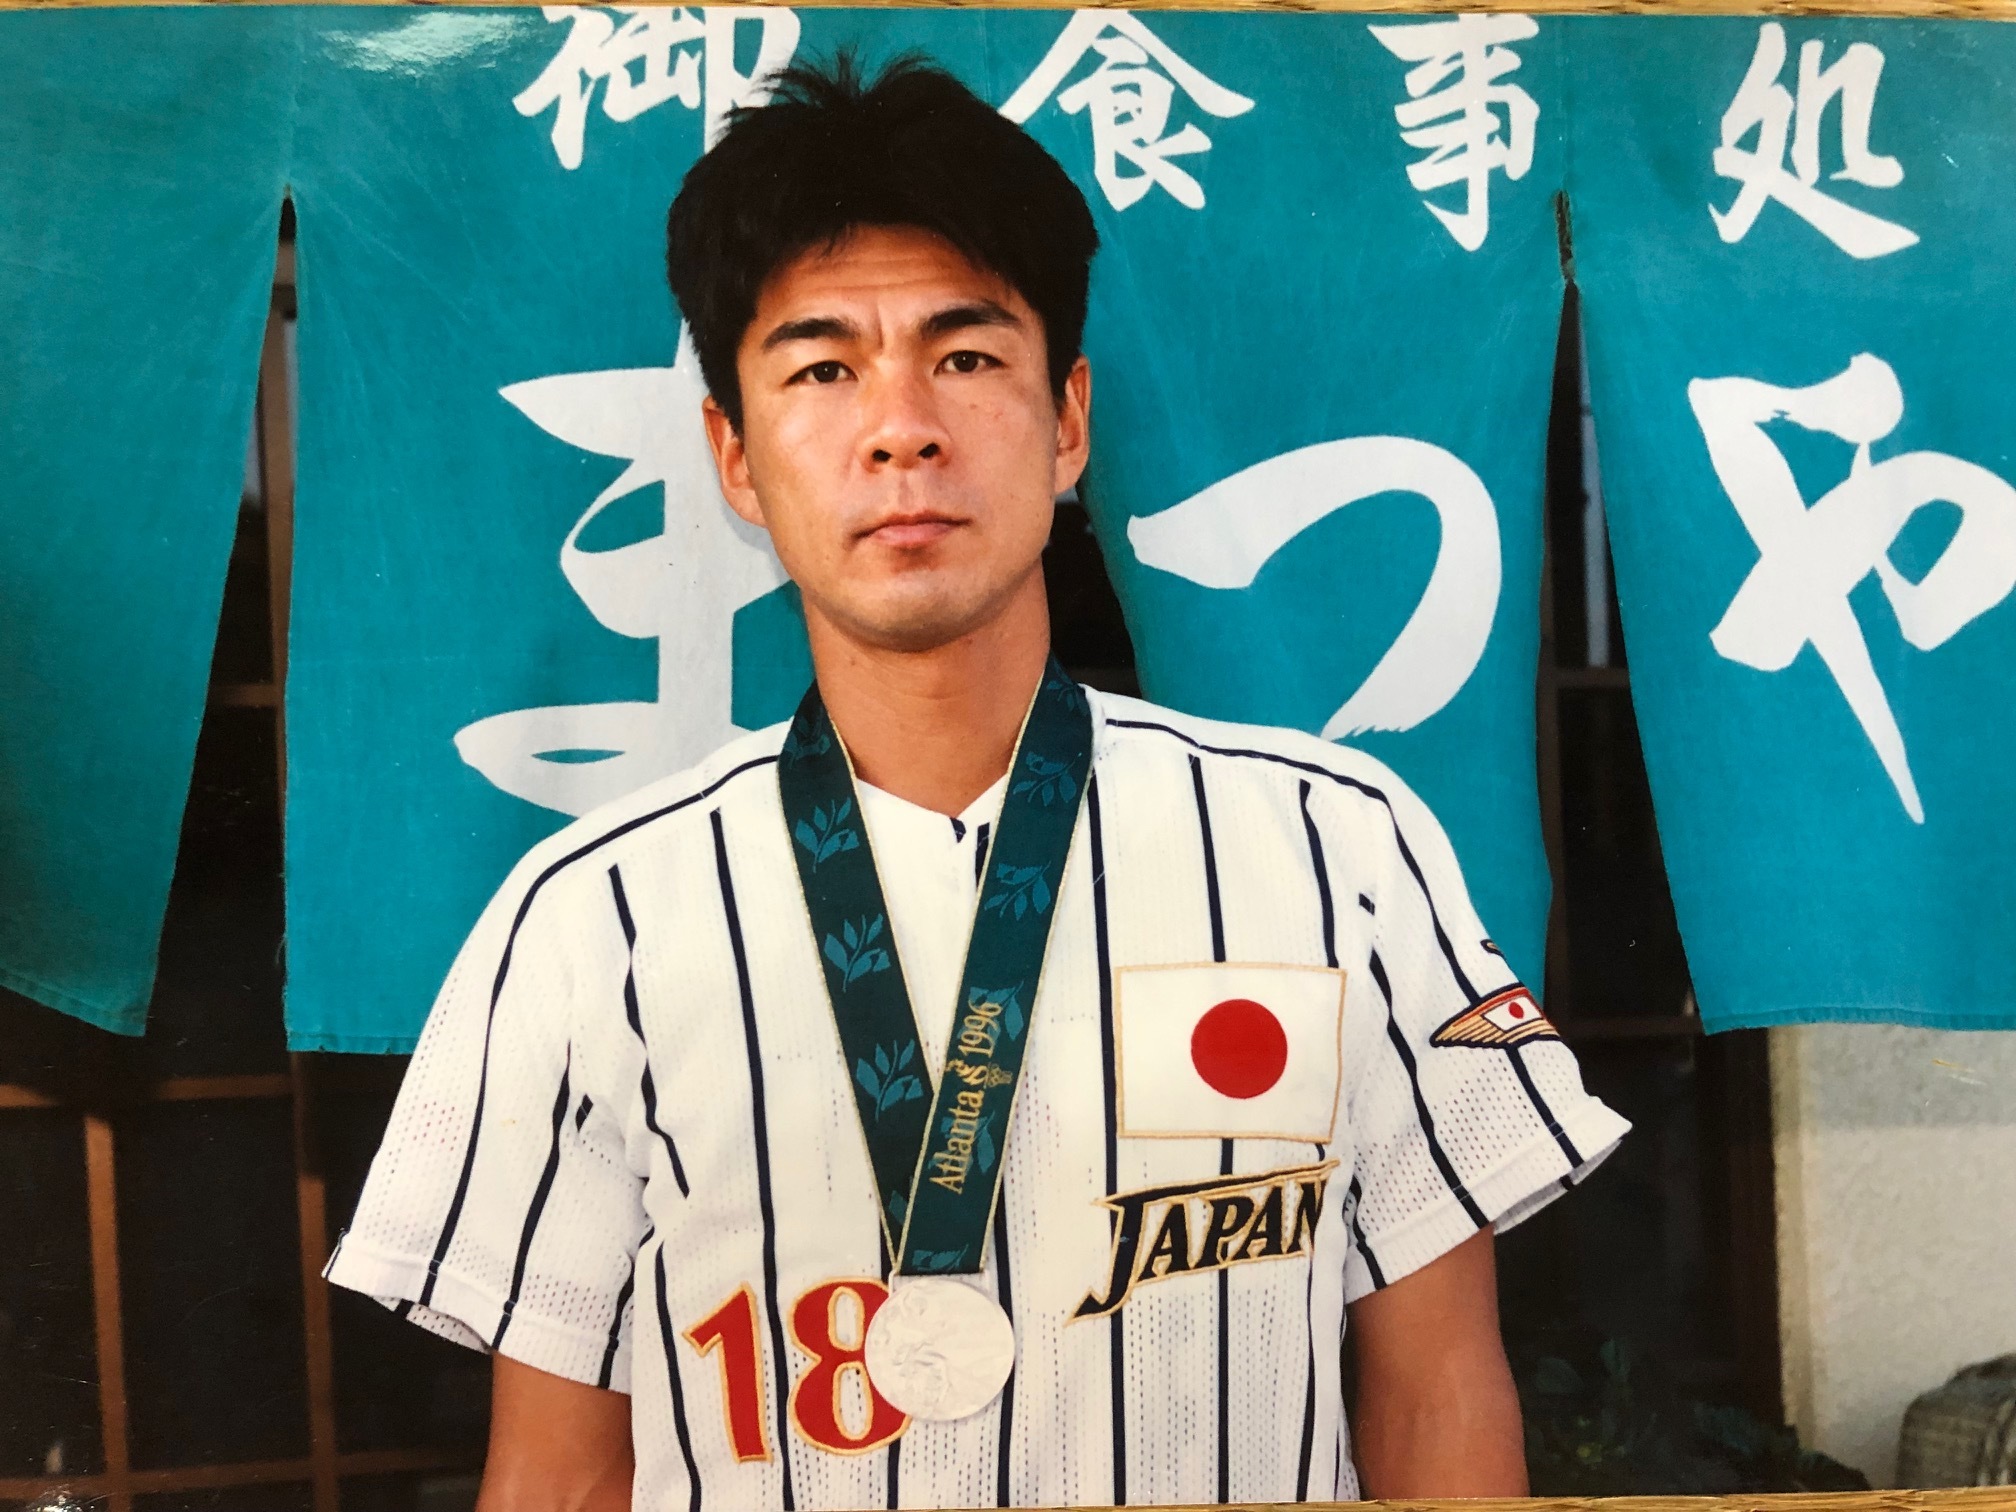 アトランタ五輪野球日本代表森昌彦選手の写真